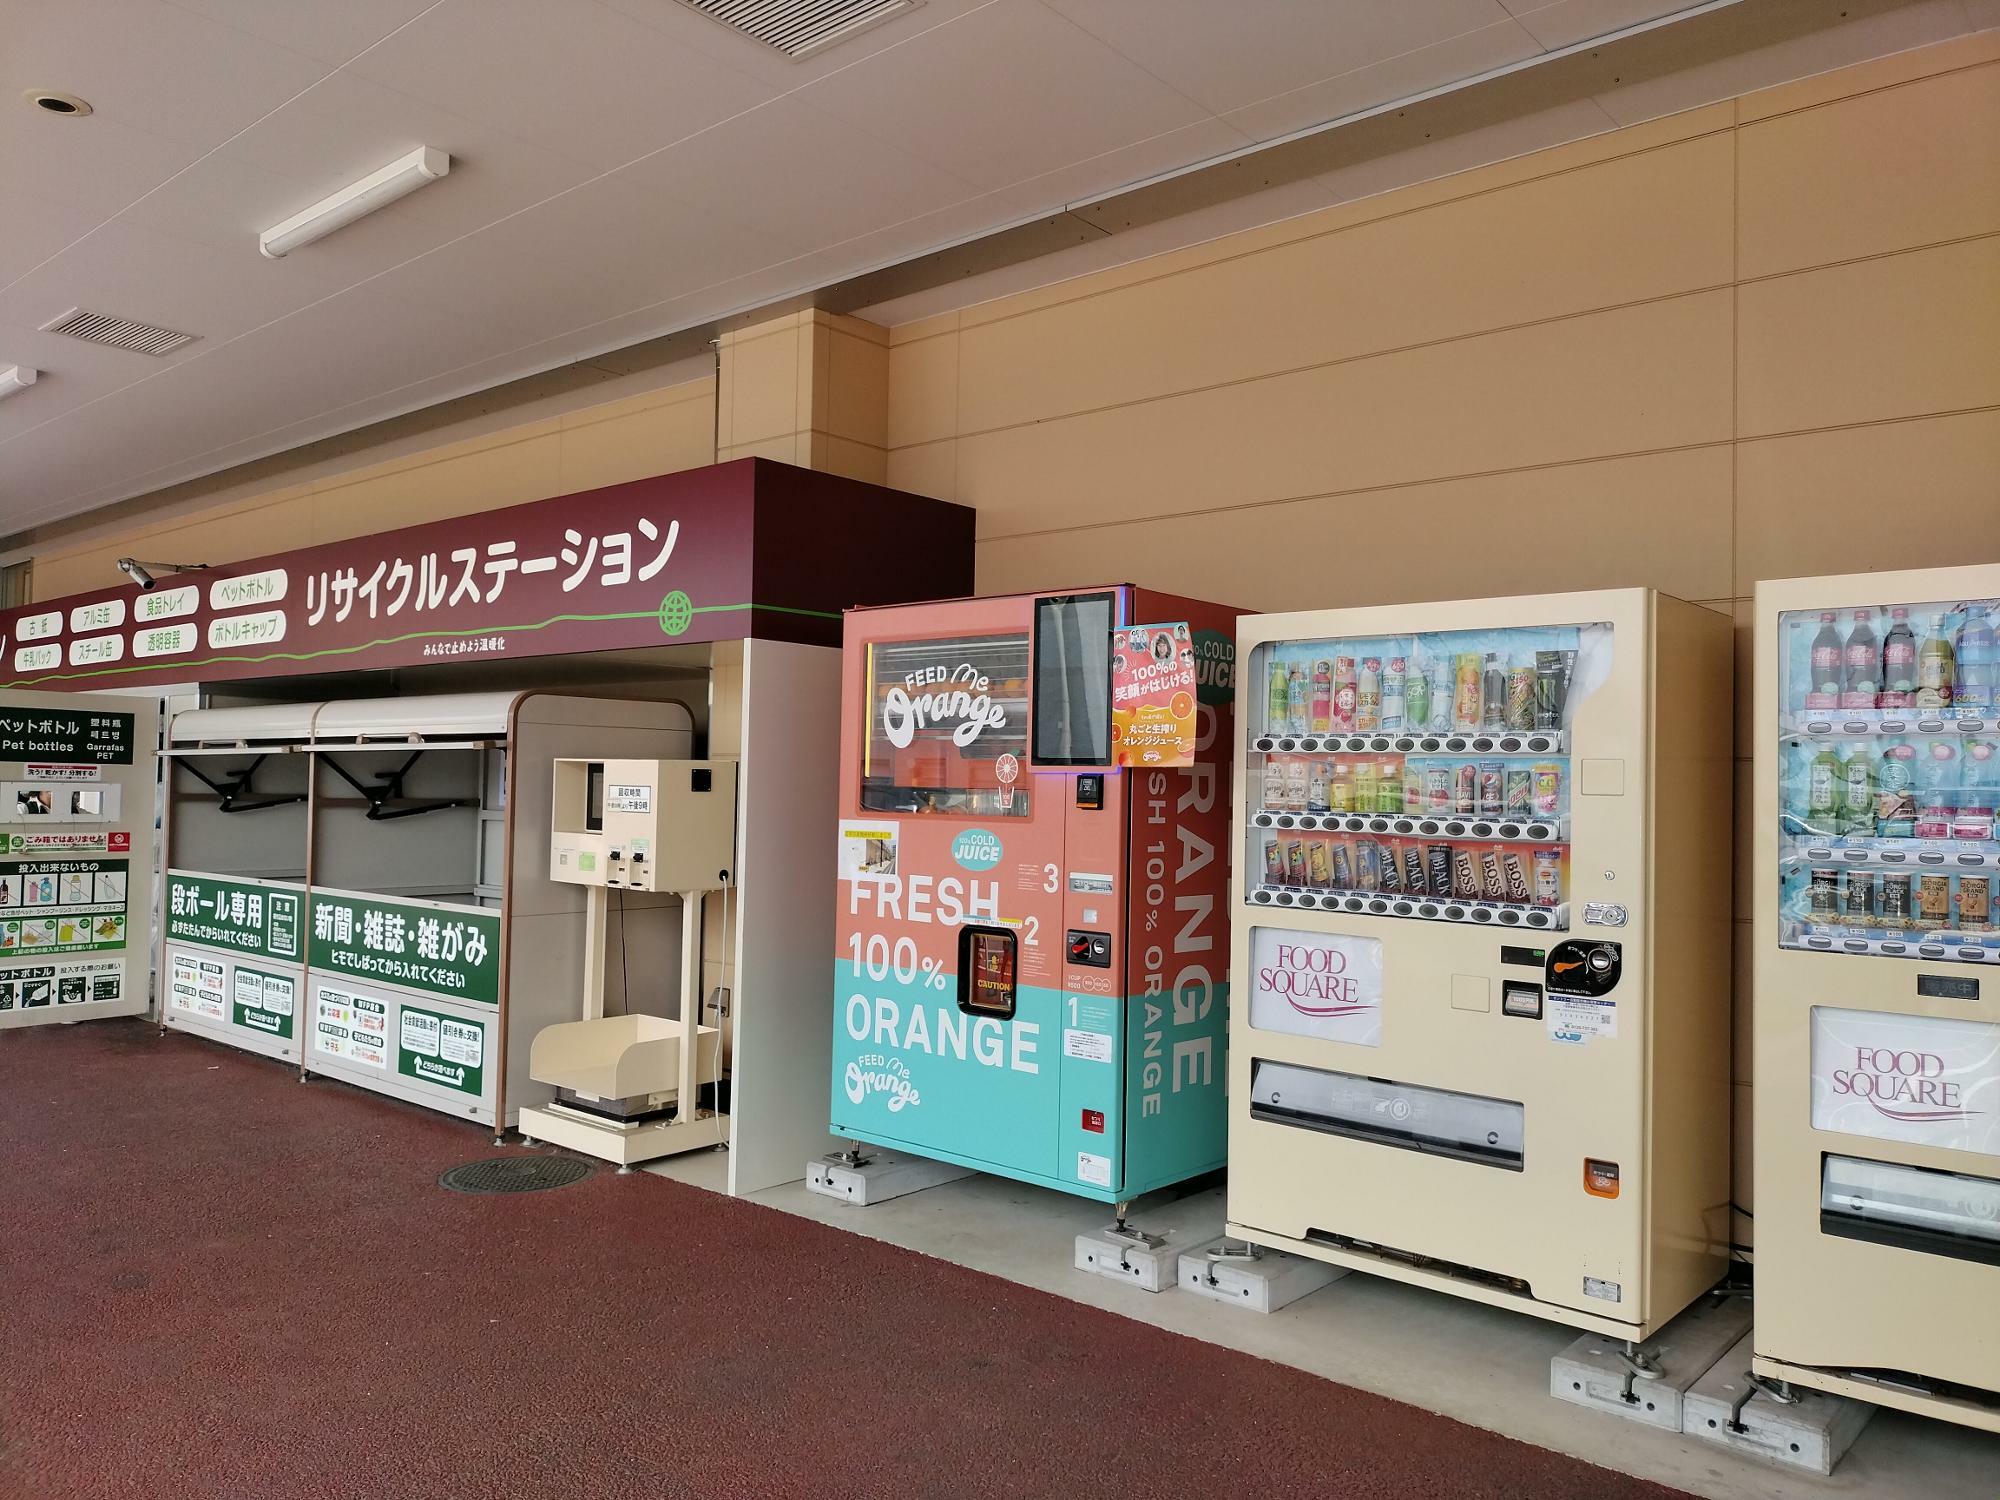 カスミフードスクエア テクノパーク桜店のFeed ME Orangeは普通の自動販売機とリサイクルステーションの間にあります。